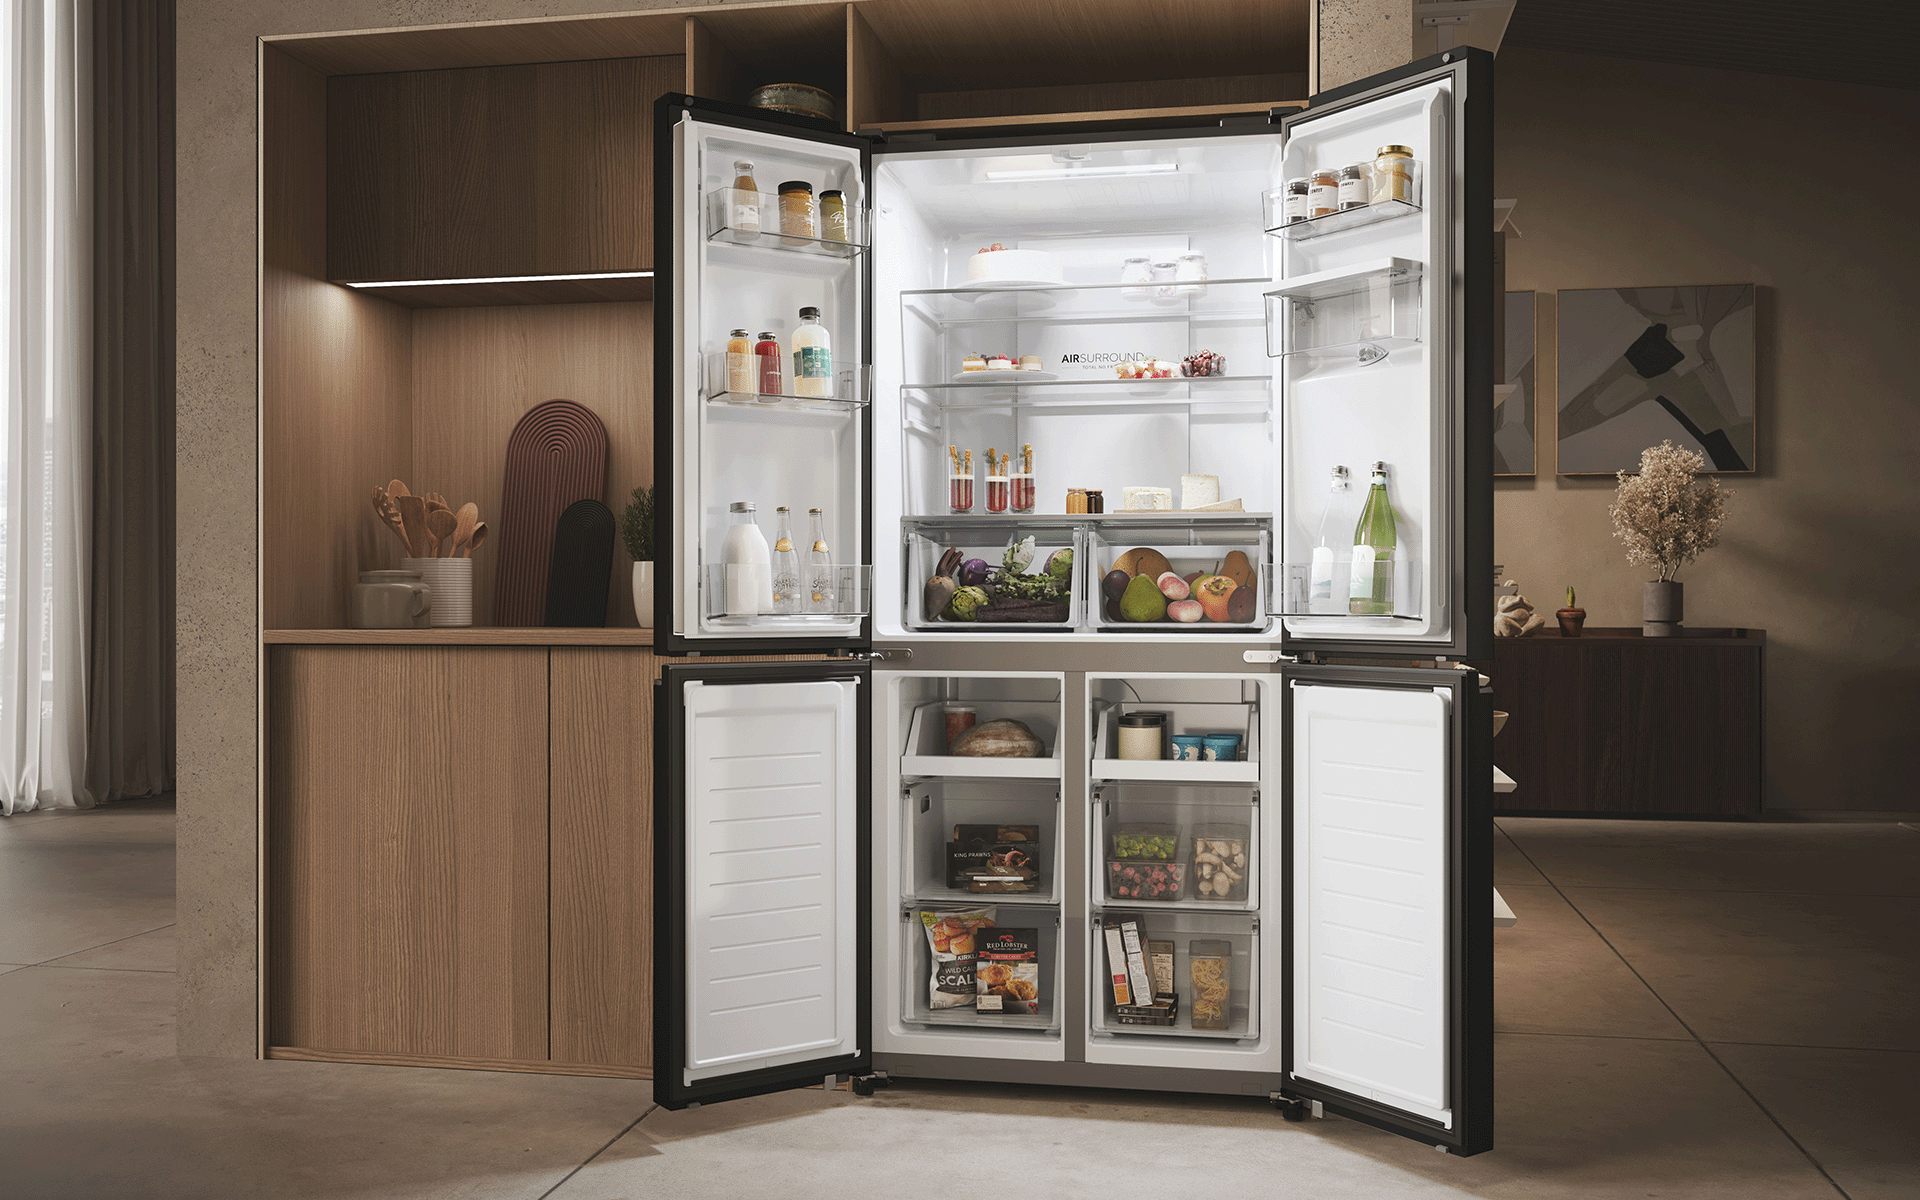 Haier American Fridge Freezer with all 4 doors wide open.